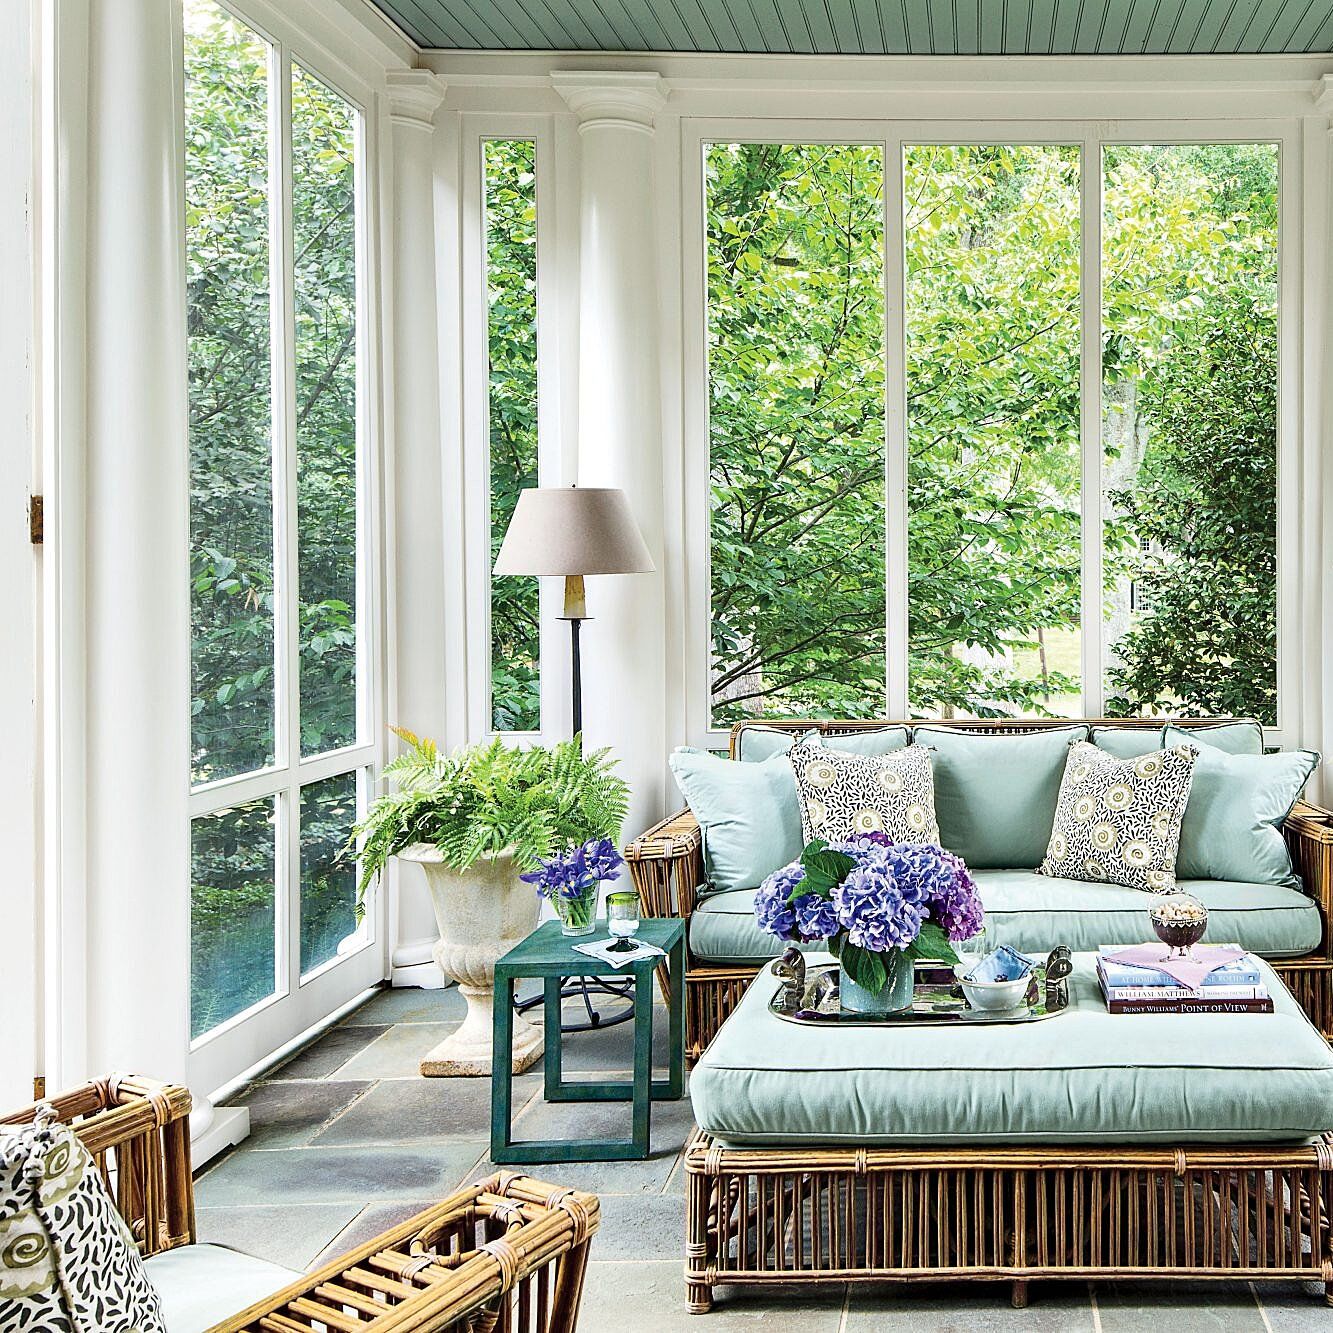 Creative ways to transform your porch into a cozy retreat